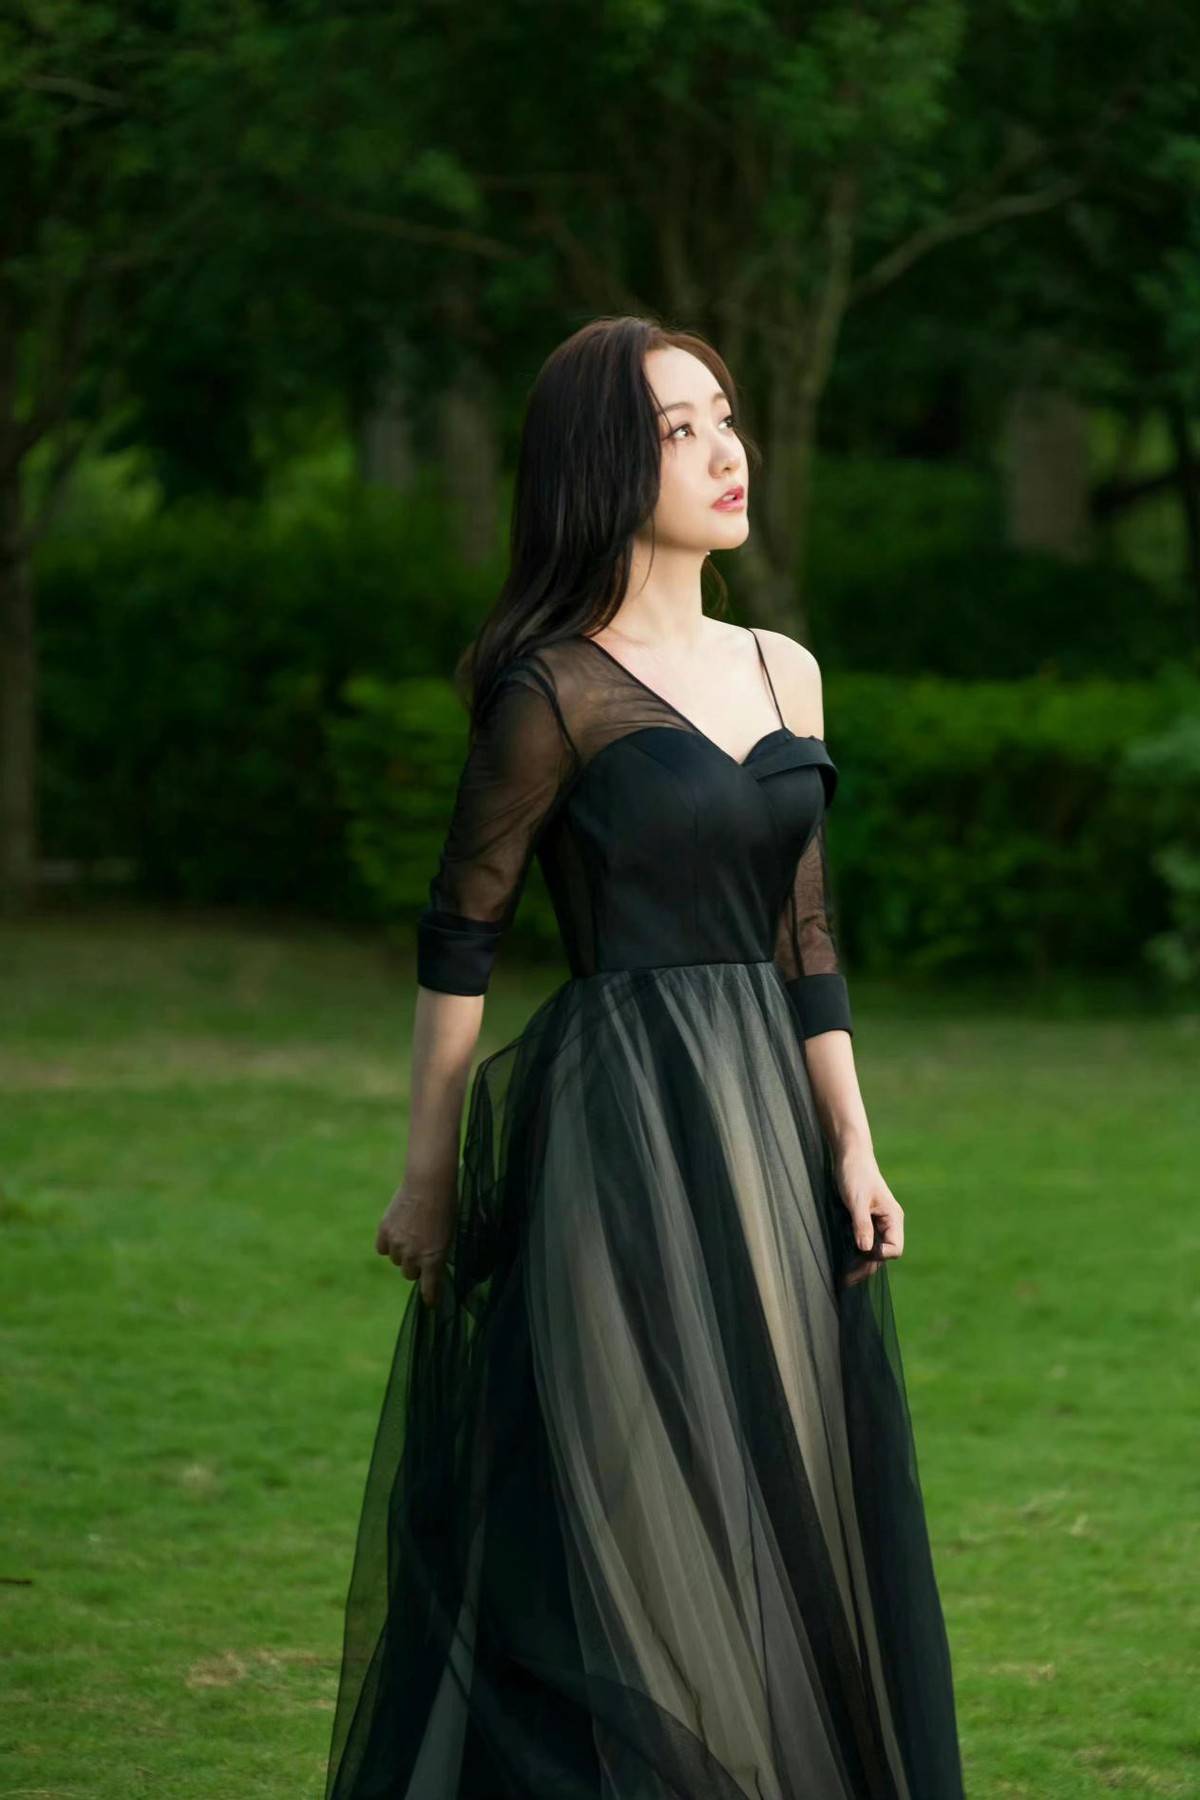 杨蓉编发披肩真好看,一身黑色薄纱连衣裙典雅浪漫,气质更是迷人